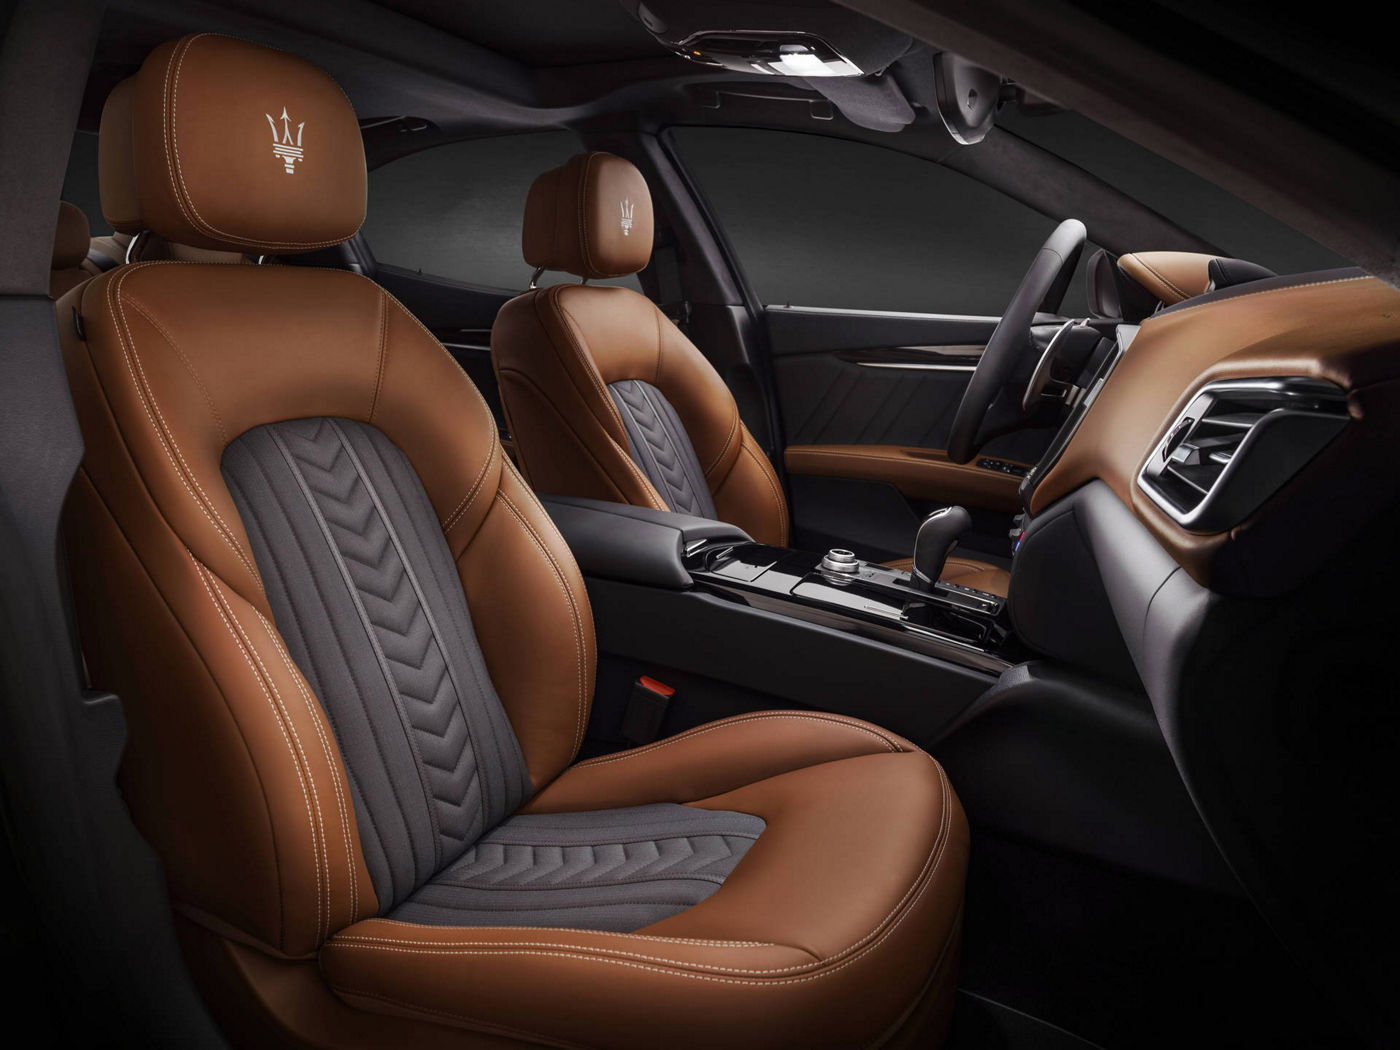 Black and brown seats design by Ermenegildo Zegna - Maserati Ghibli GranLusso